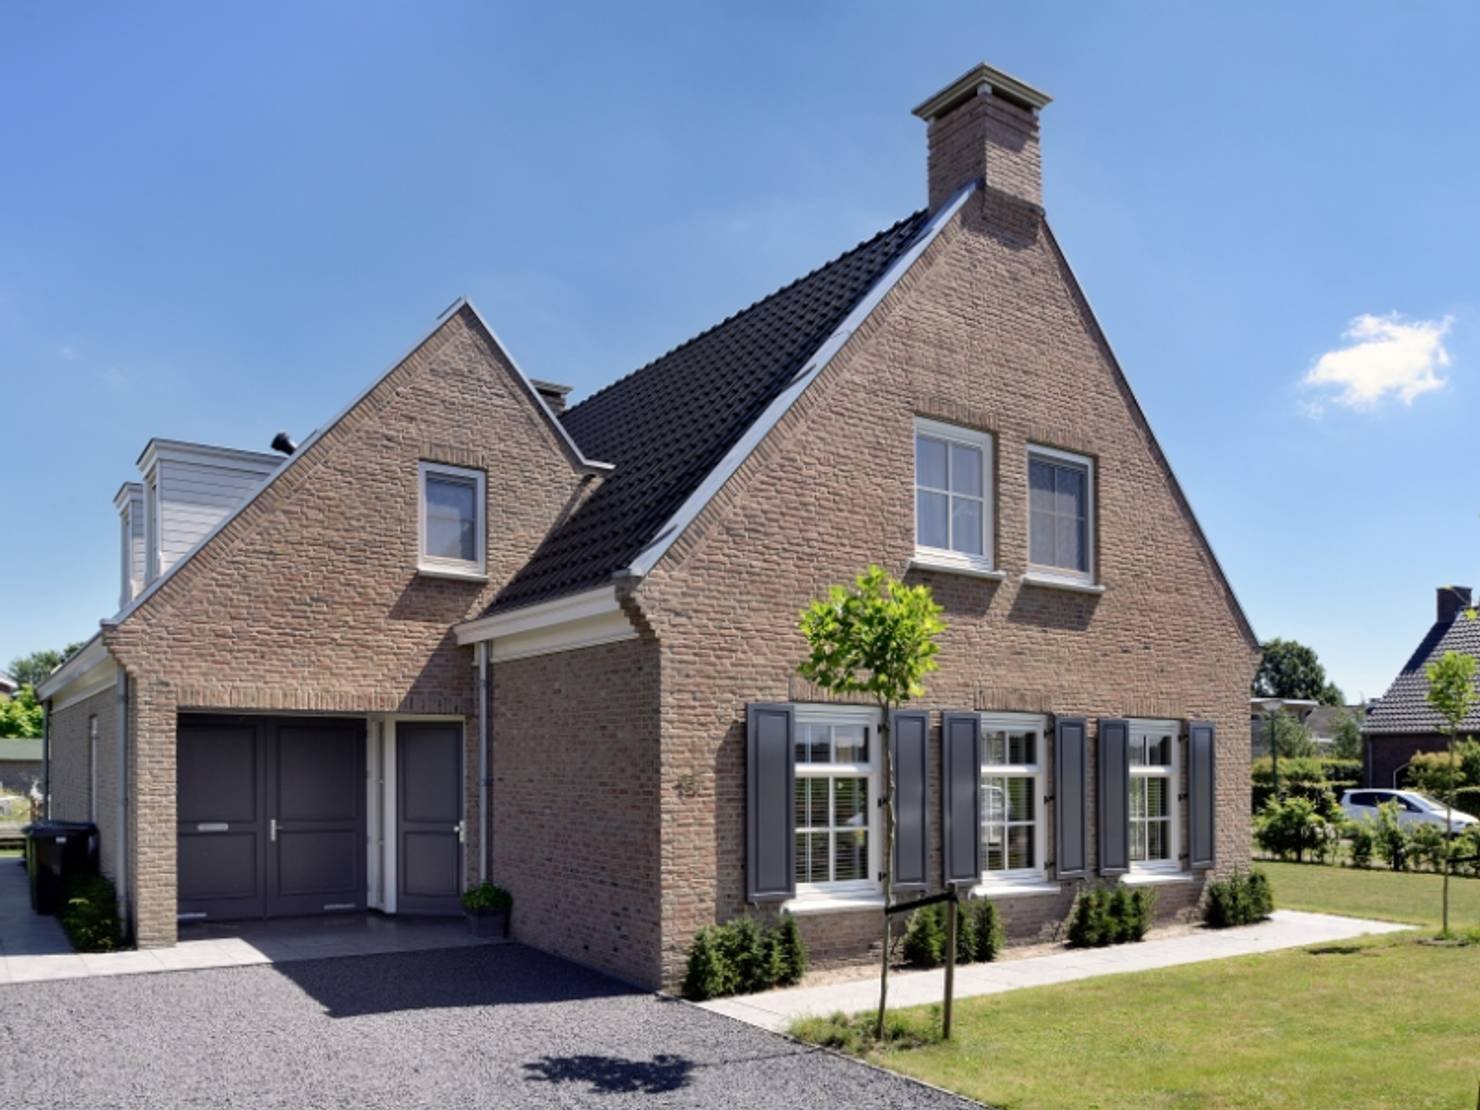 Голландский дом отзывы. Дом в голландском стиле. Домик в голландском стиле. Голландский стиль в архитектуре. Фасад в голландском стиле.